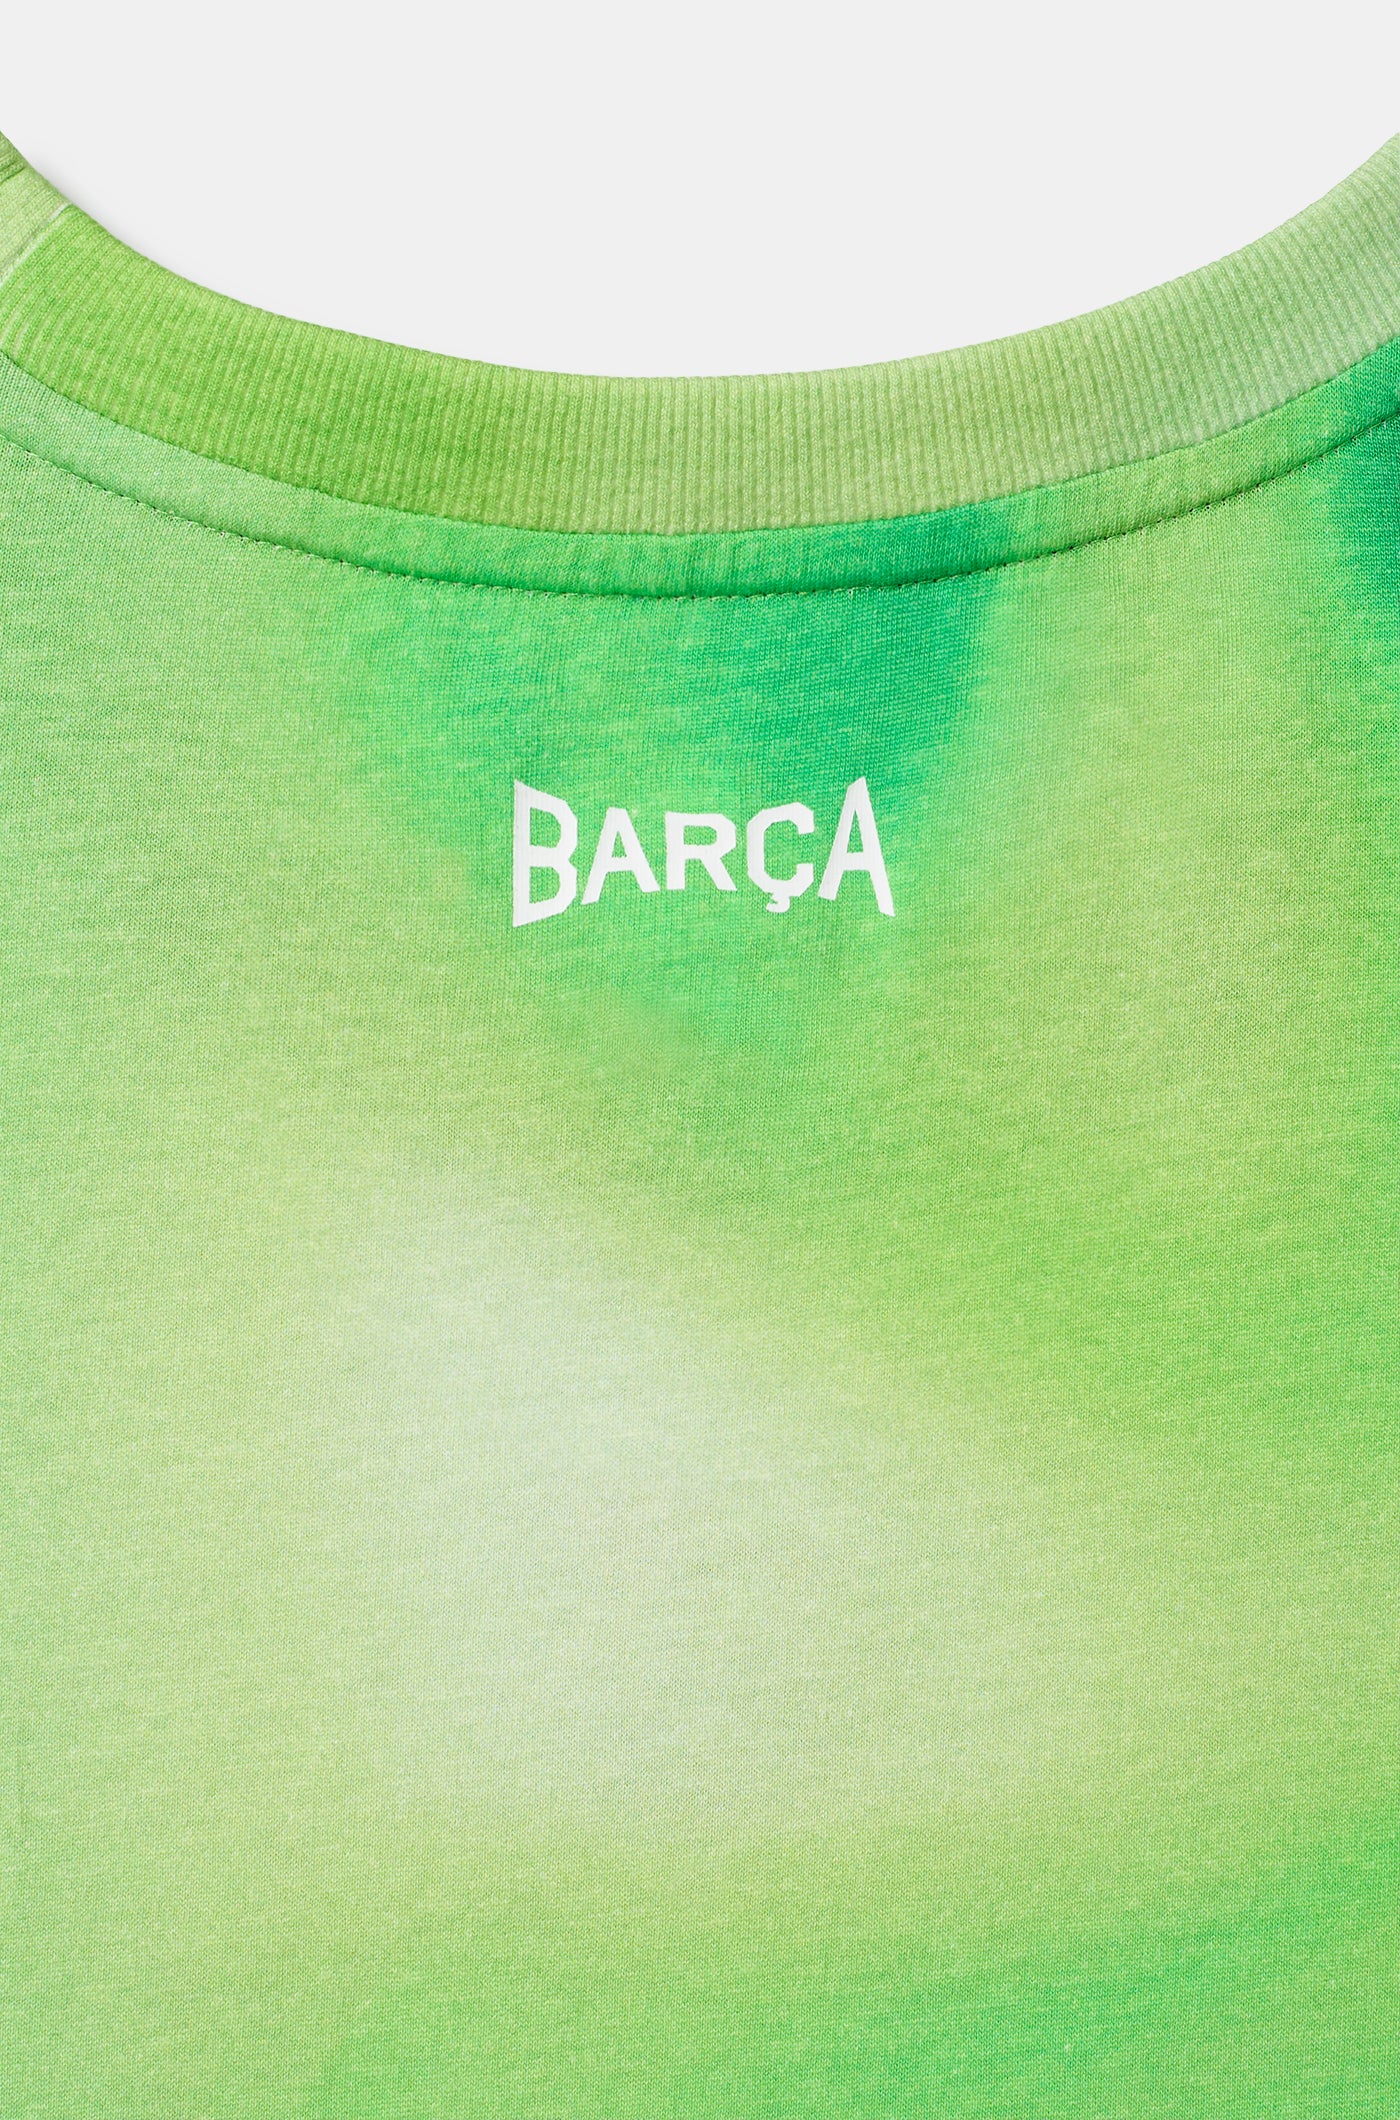 Débardeur vert Barça